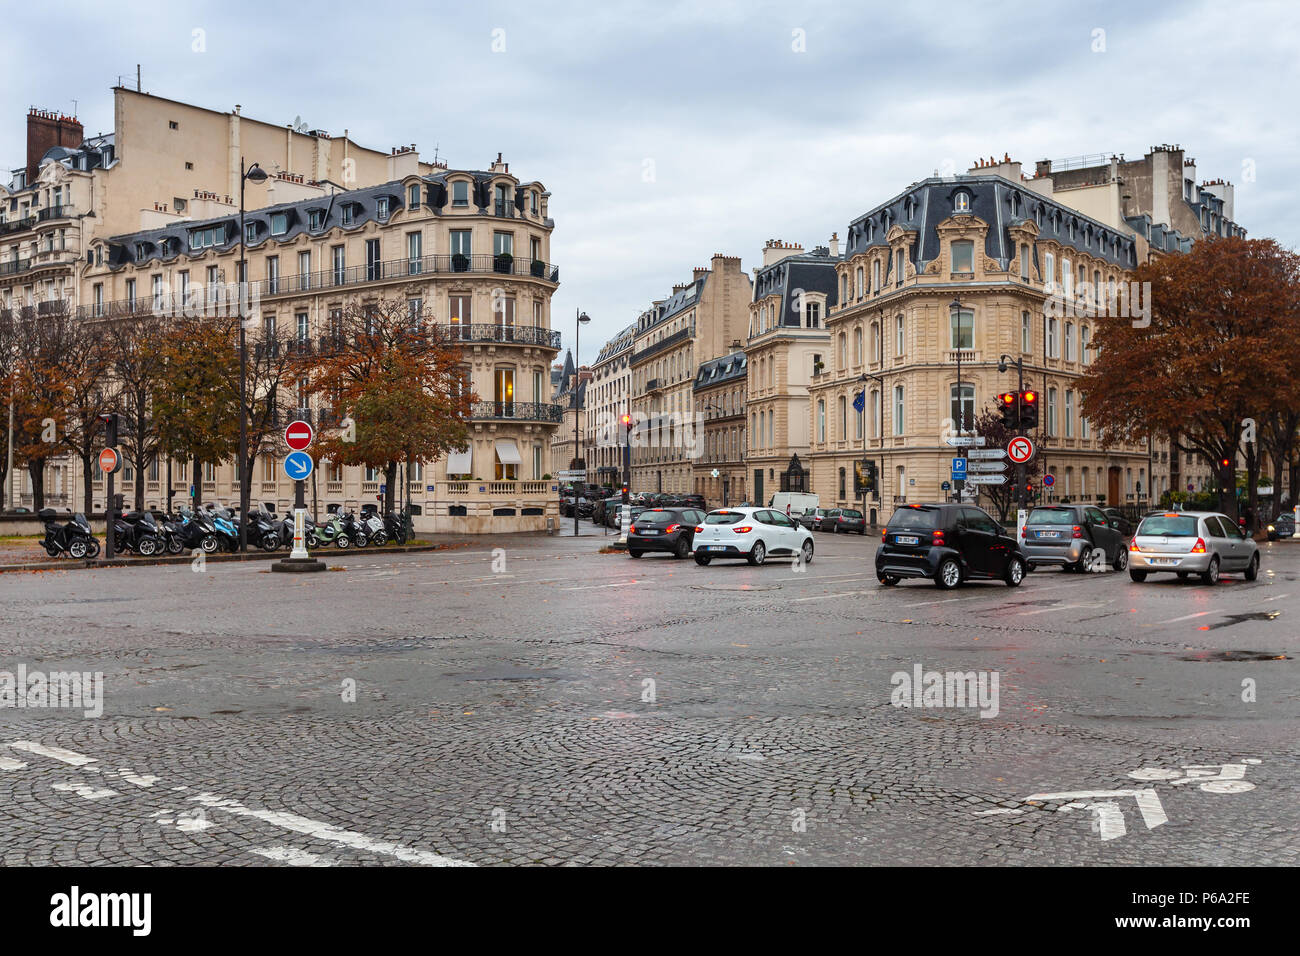 Paris, France - 4 novembre 2016 : vue sur la rue de la ville de Paris avec des voitures en attente sur carrefour urbain Banque D'Images